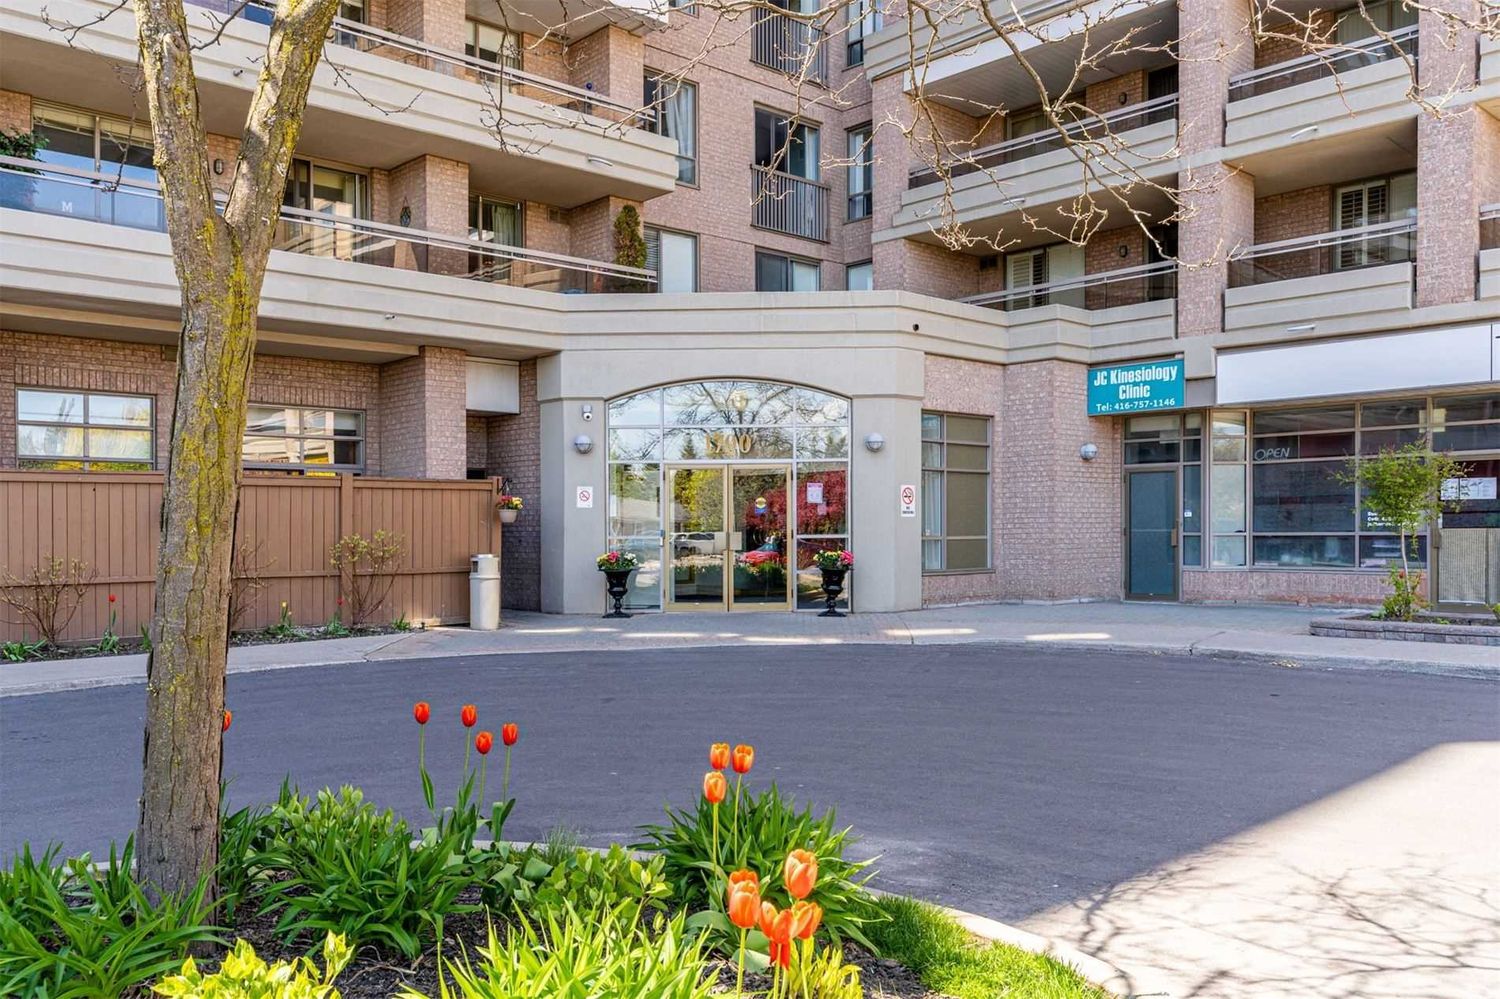 1700 Eglinton Avenue E. Oasis Condos is located in  North York, Toronto - image #2 of 4